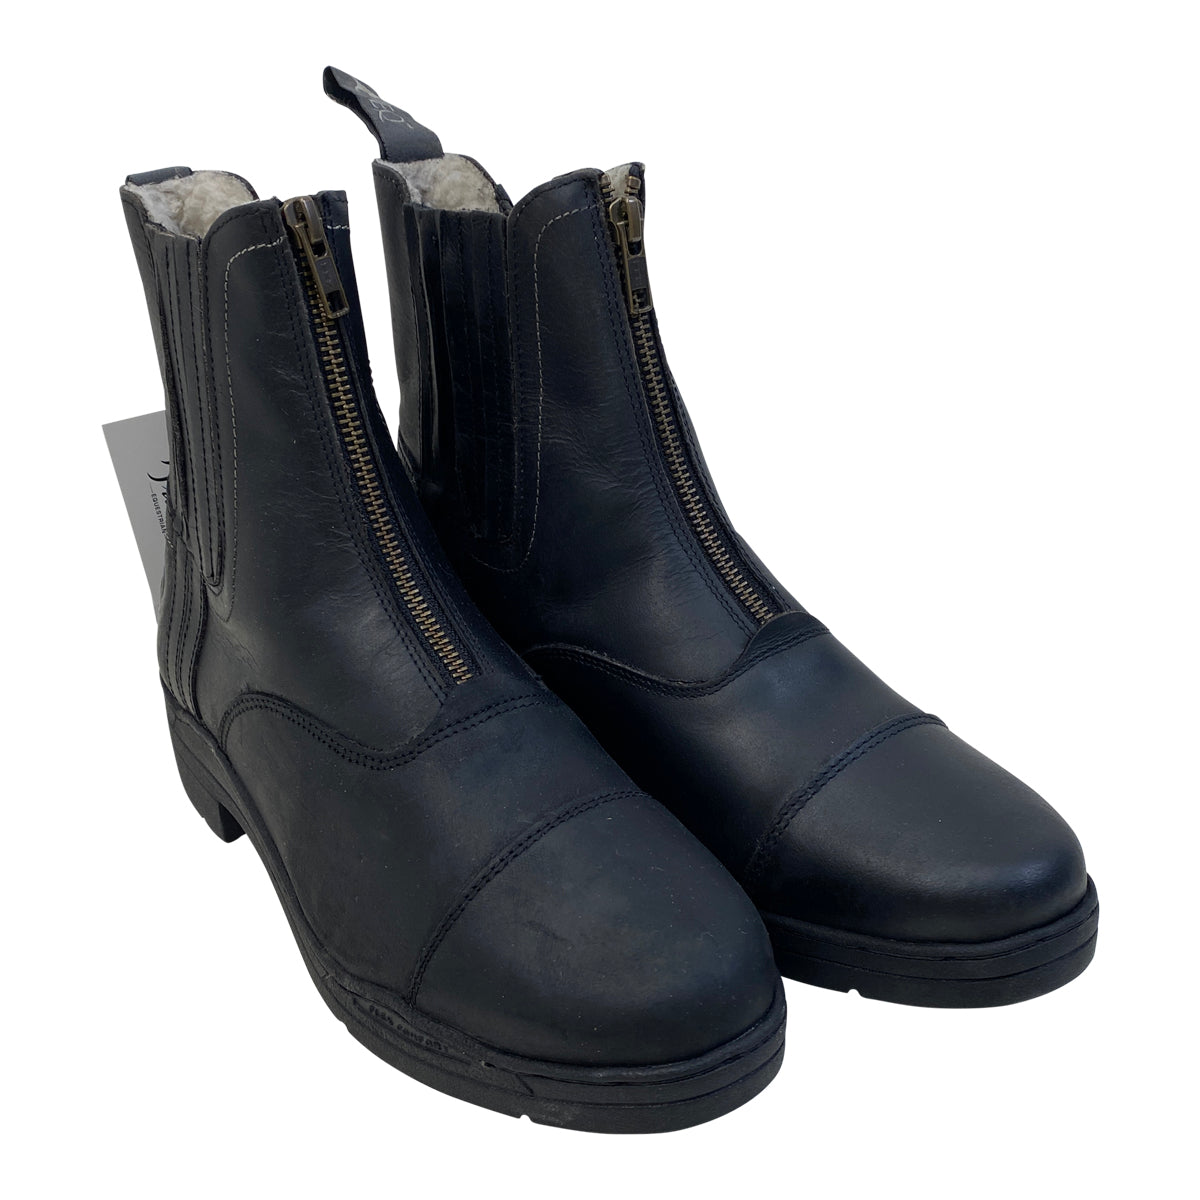 Oak Equestrian Winter Paddock Boots in Black